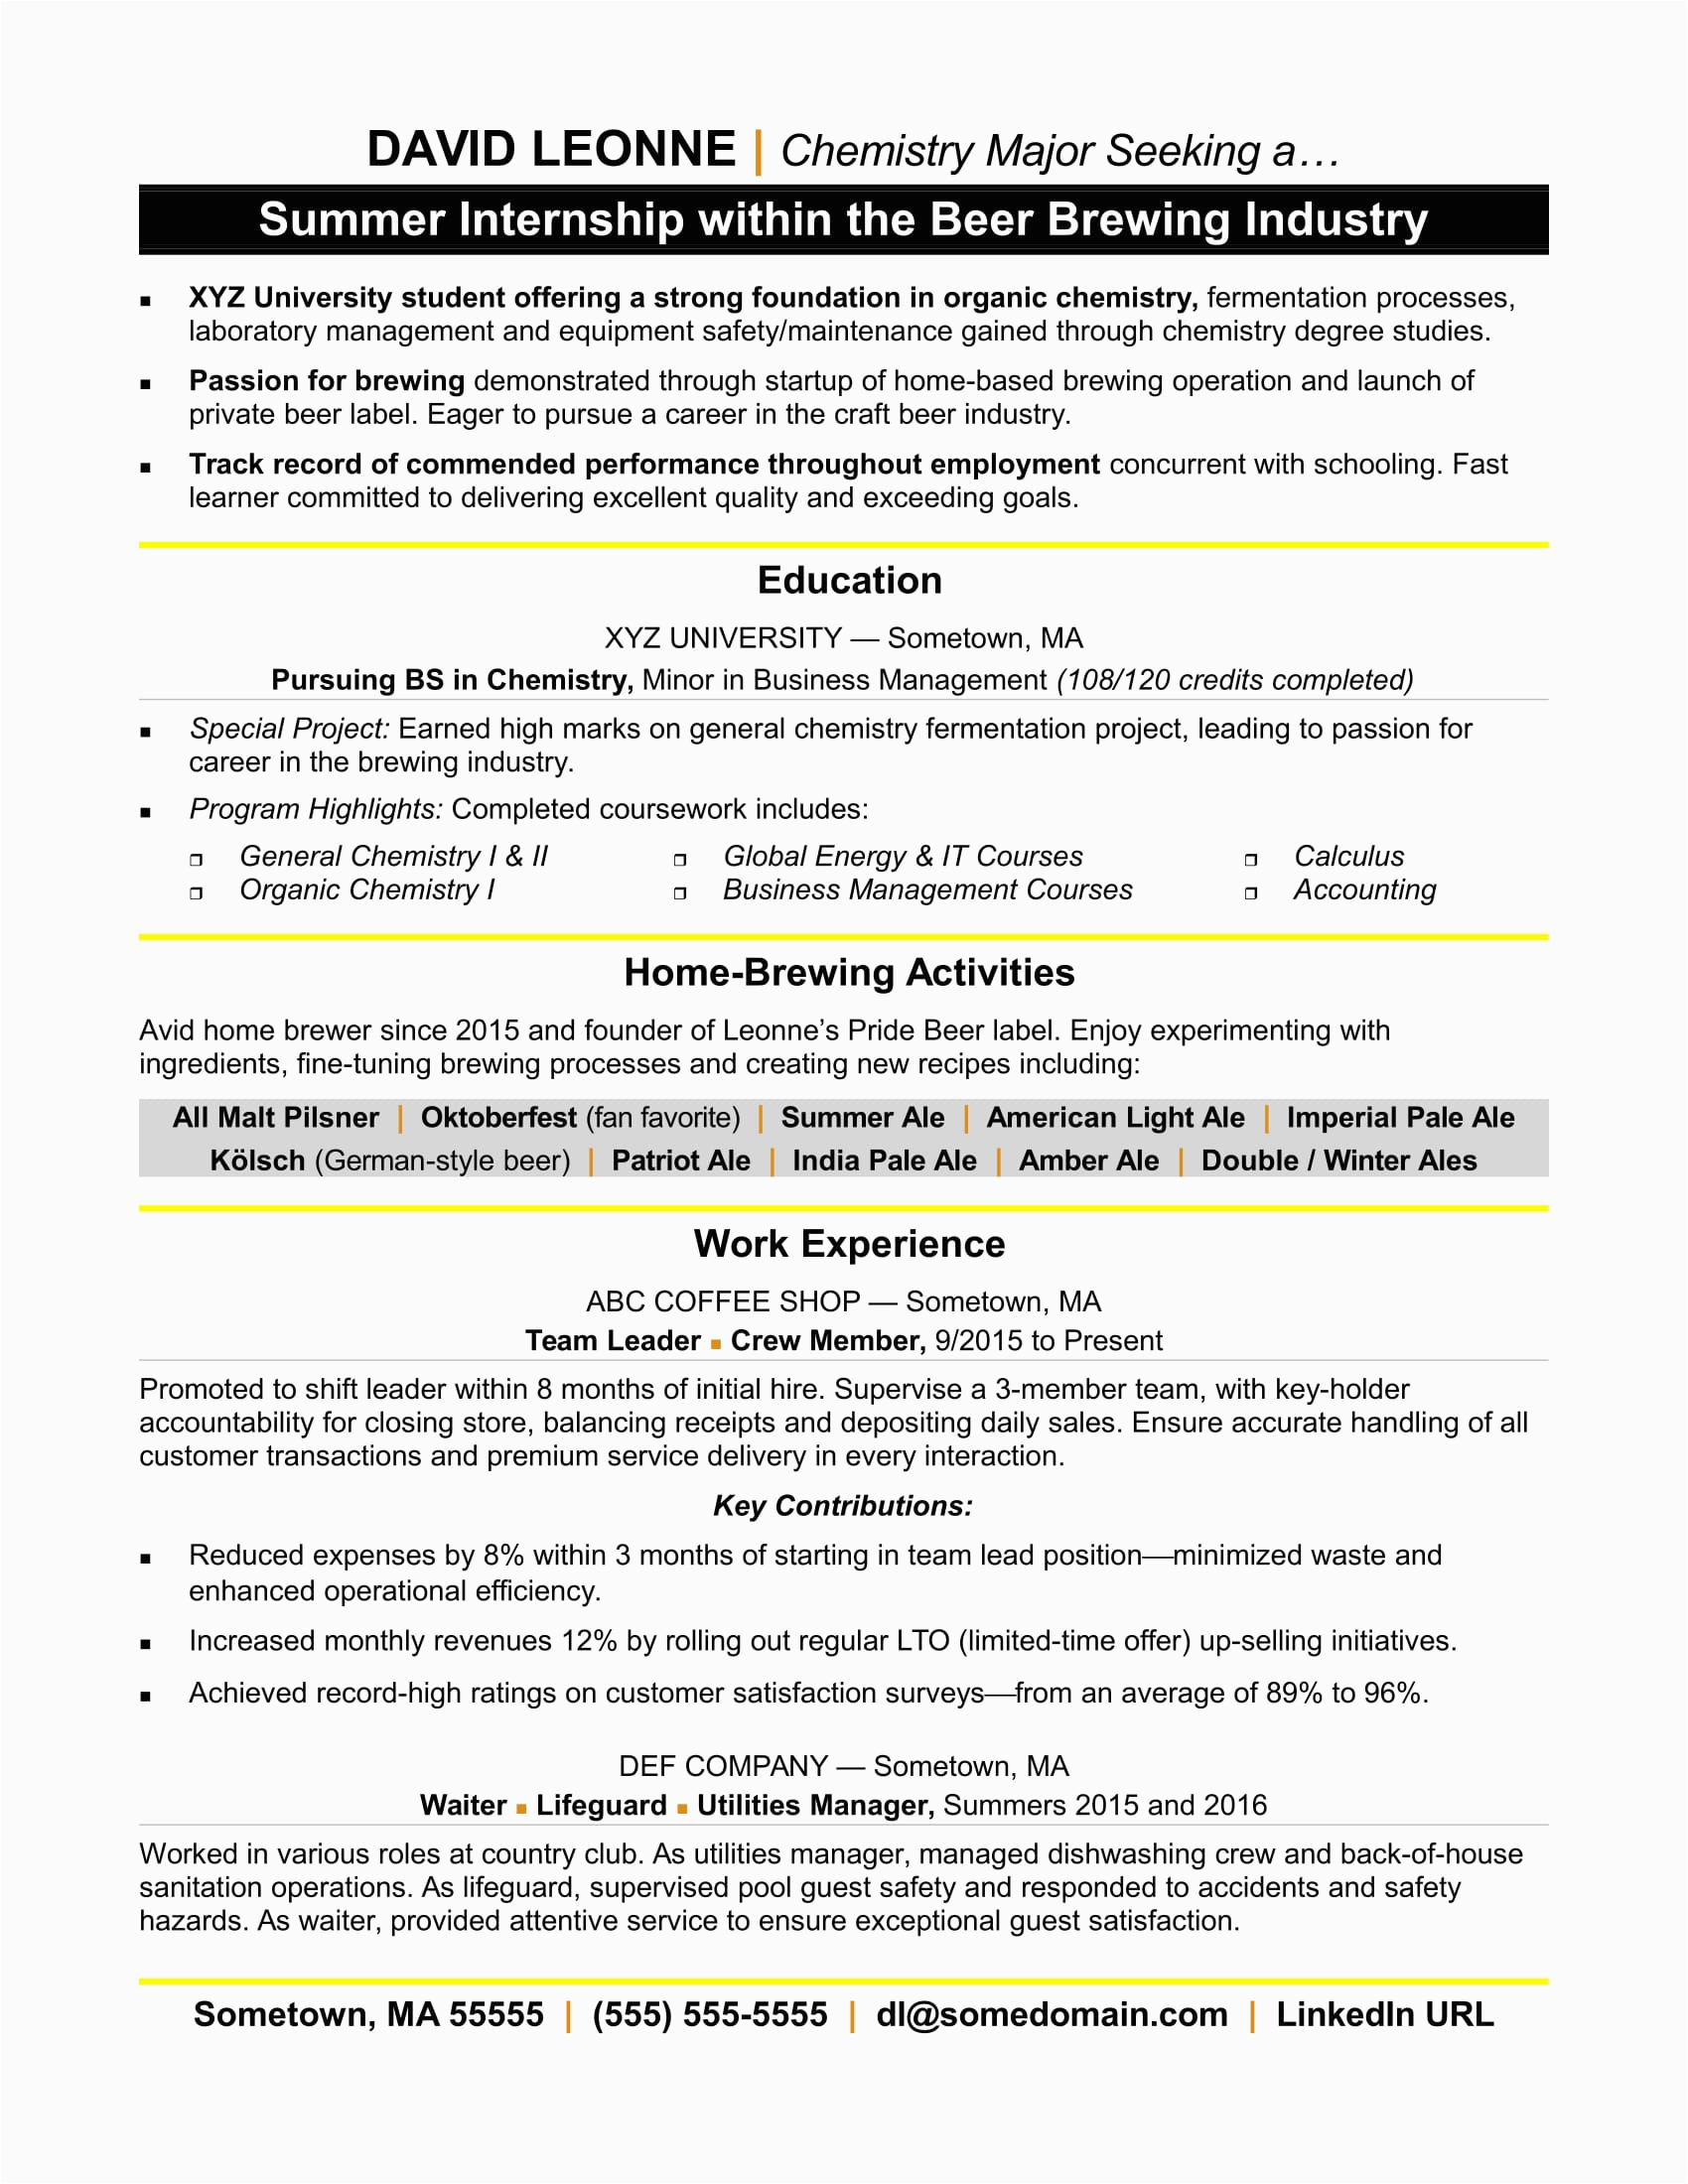 Sample Resume when Applying for College Internships Resume for Internship